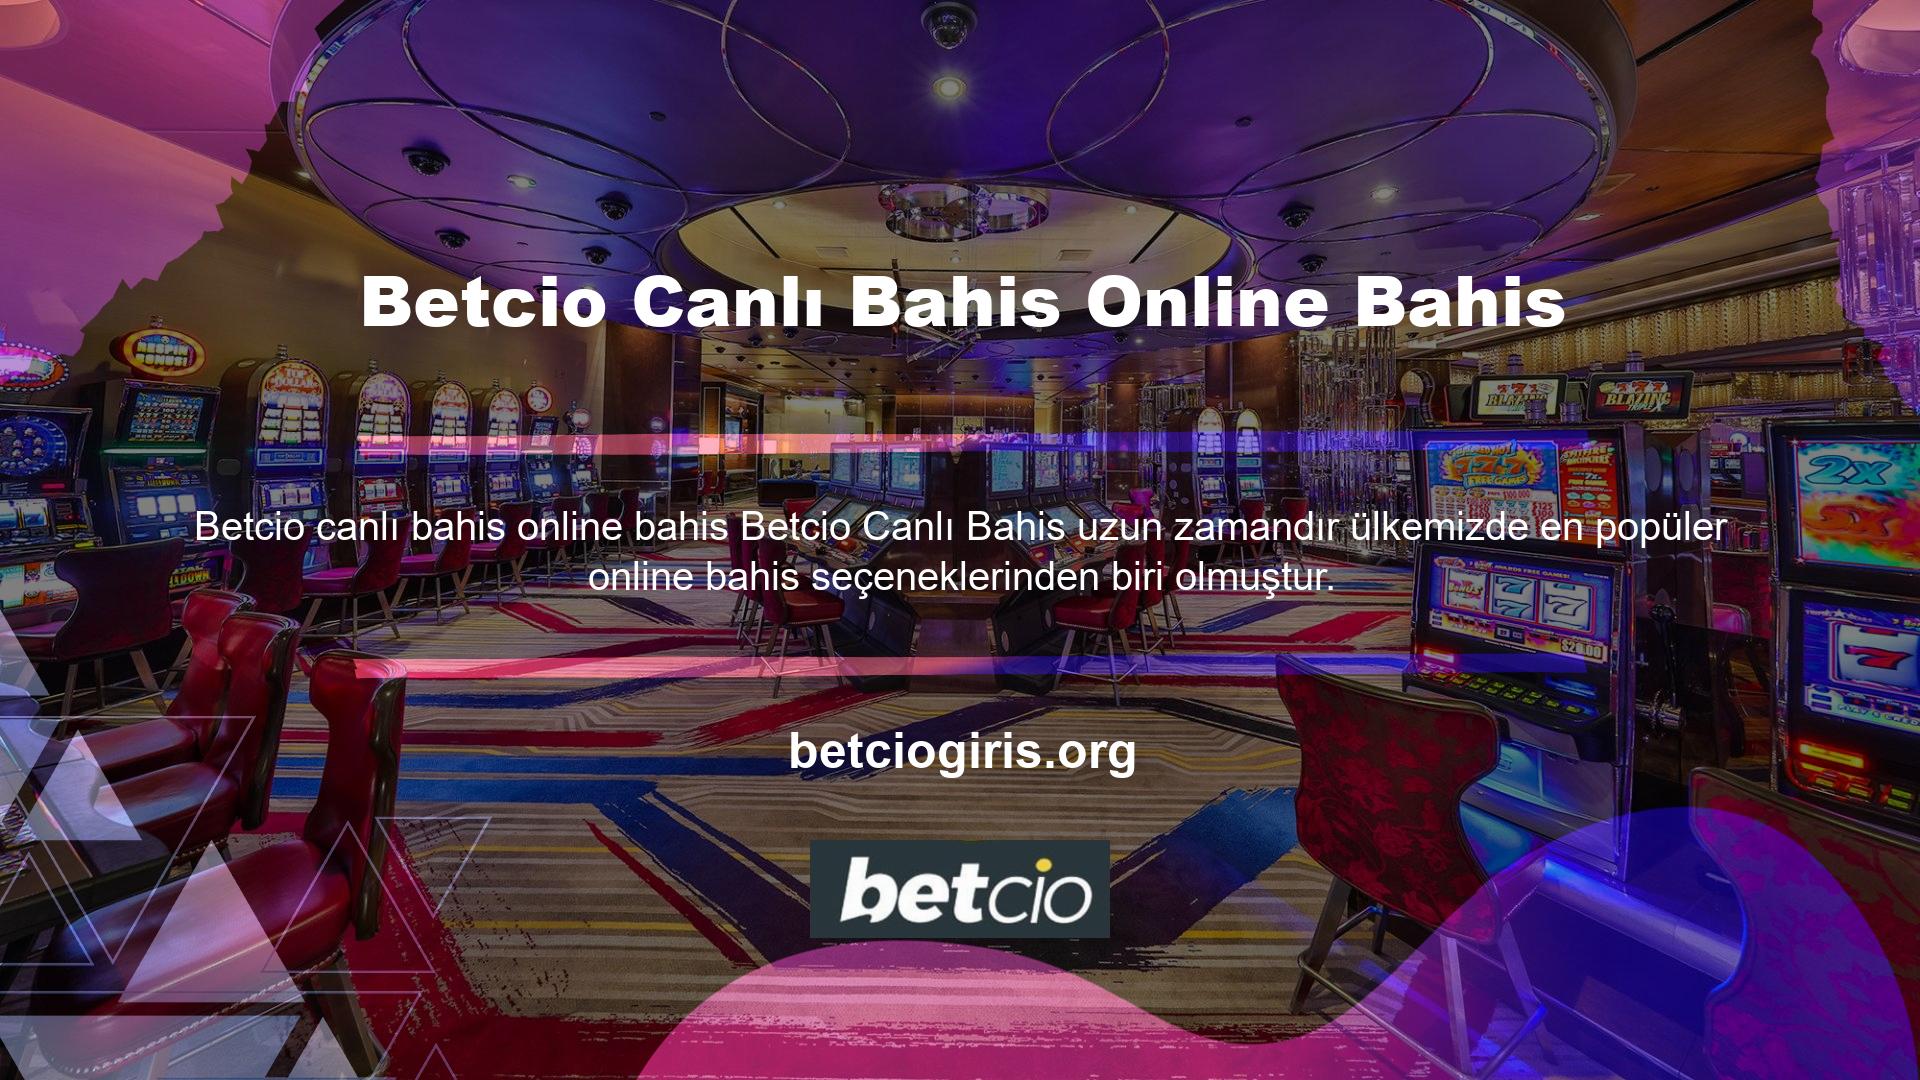 Farklı gerilimler ve farklı oyunlar arayanlar için Betcio, kullanıcılarına geniş bir canlı bahis yelpazesi sunmaktadır